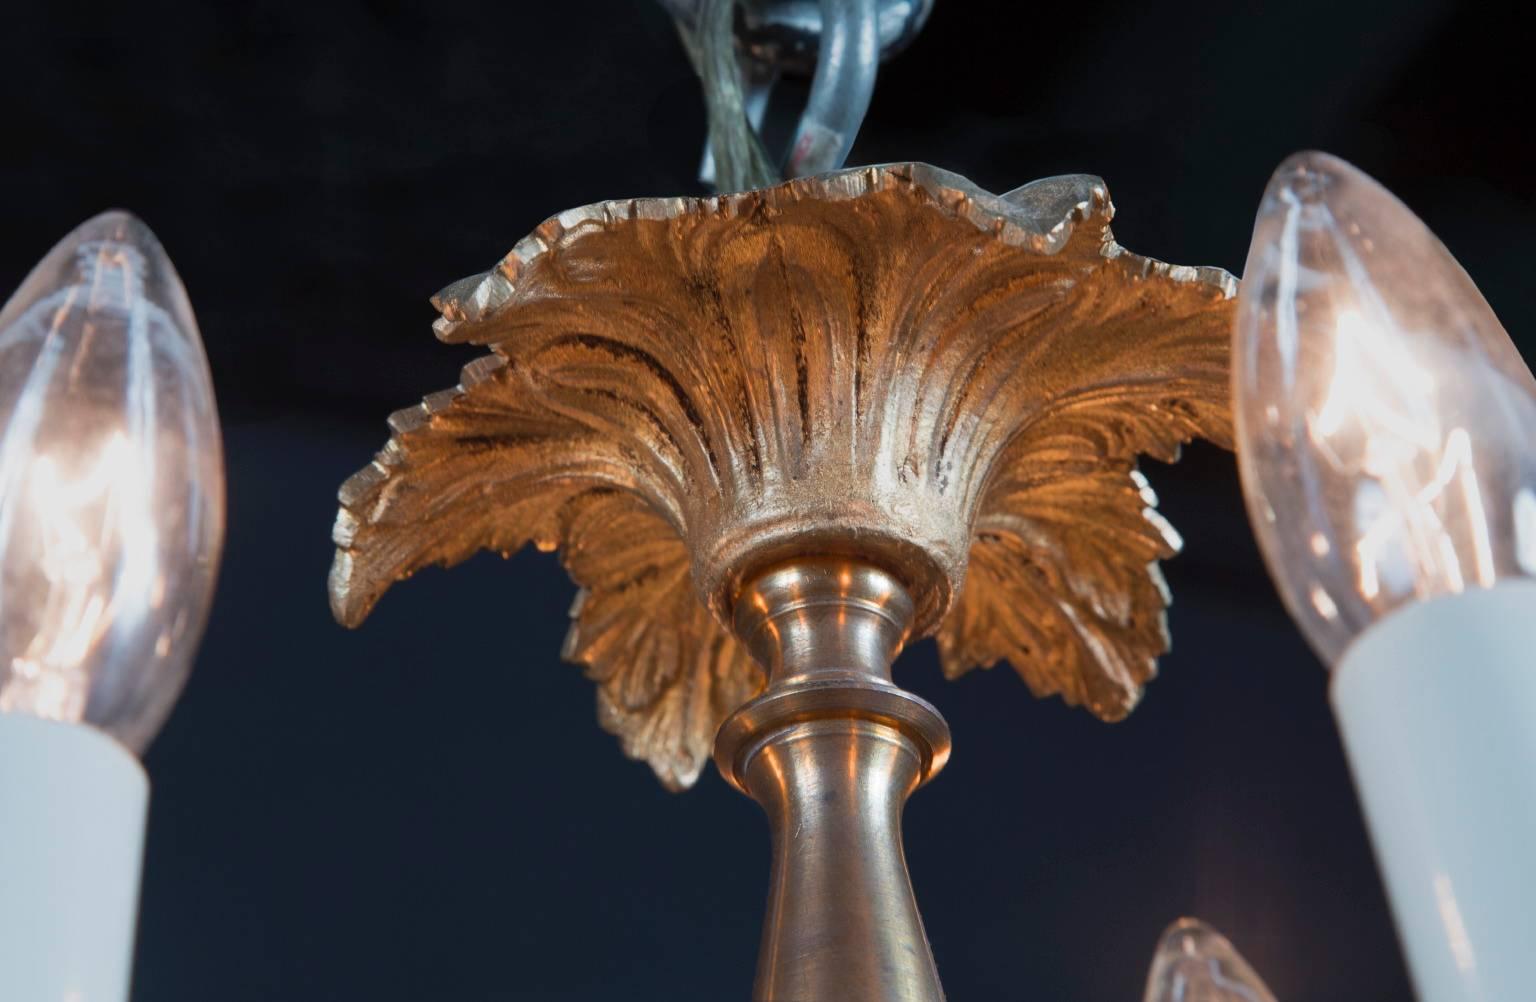 Ce lustre Louis XVI en bronze est orné de feuilles de bronze.  La couronne de feuilles de palmier au sommet reflète ce style. La pièce antique française du 19e siècle possède des bras en bronze à volutes ornés de feuilles, ainsi qu'un centre en